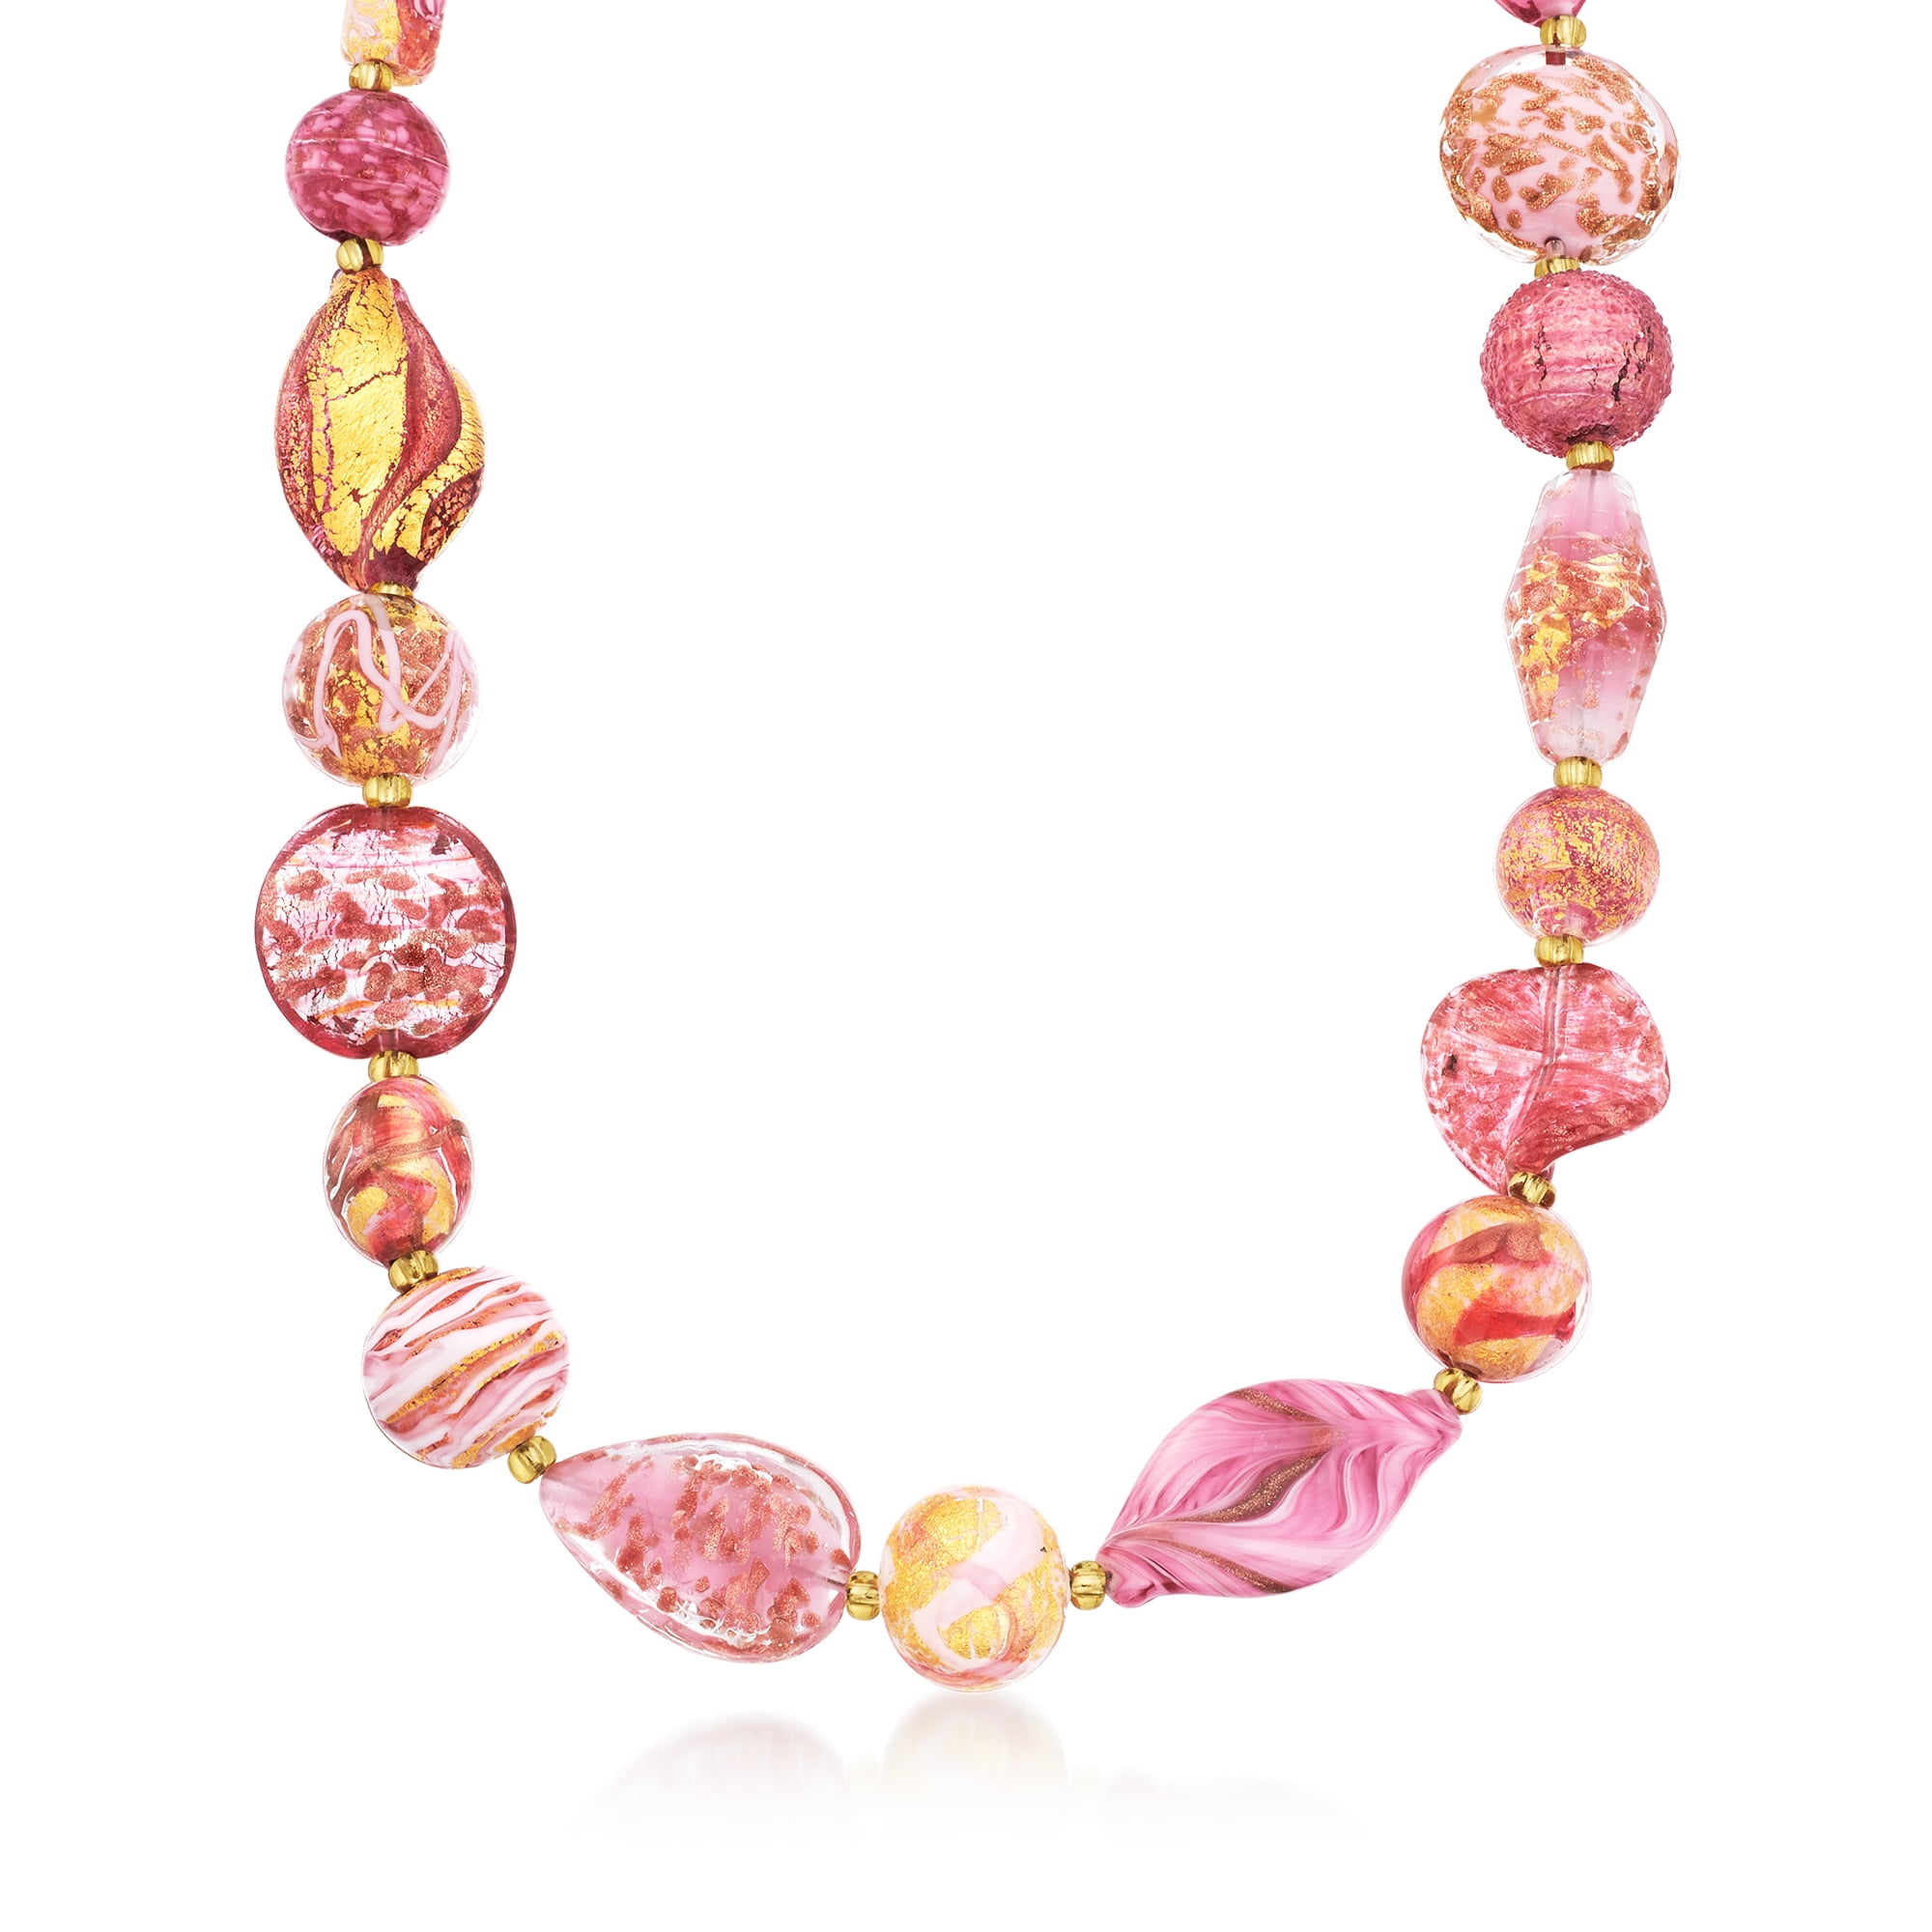 Strand of Exceptionally rare venetian Glass Beads! | Beadparadise.com